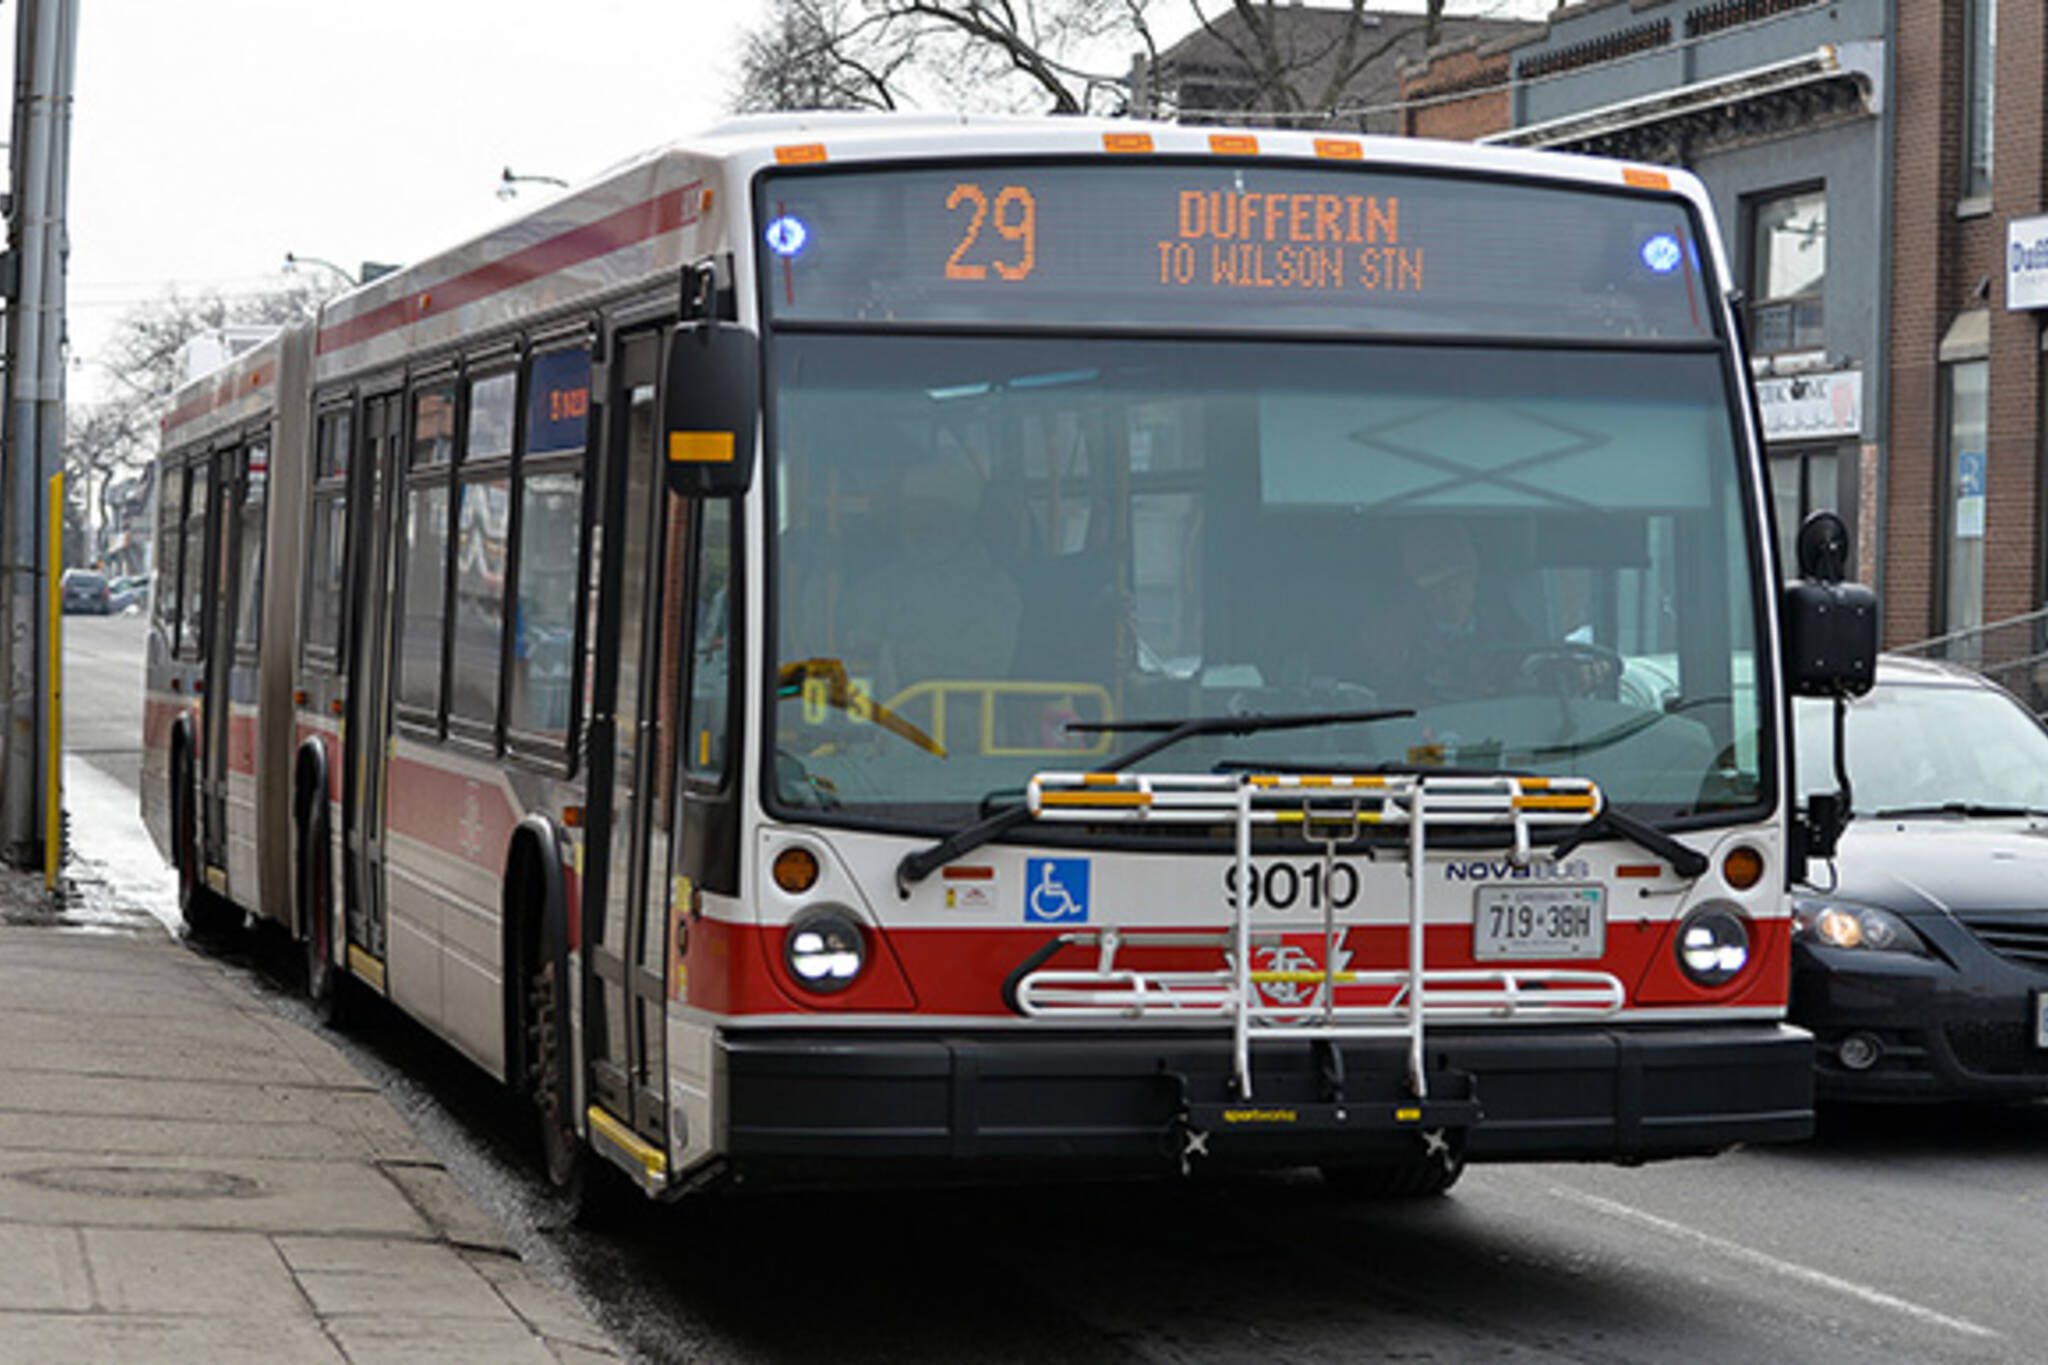 Express bus routes Toronto